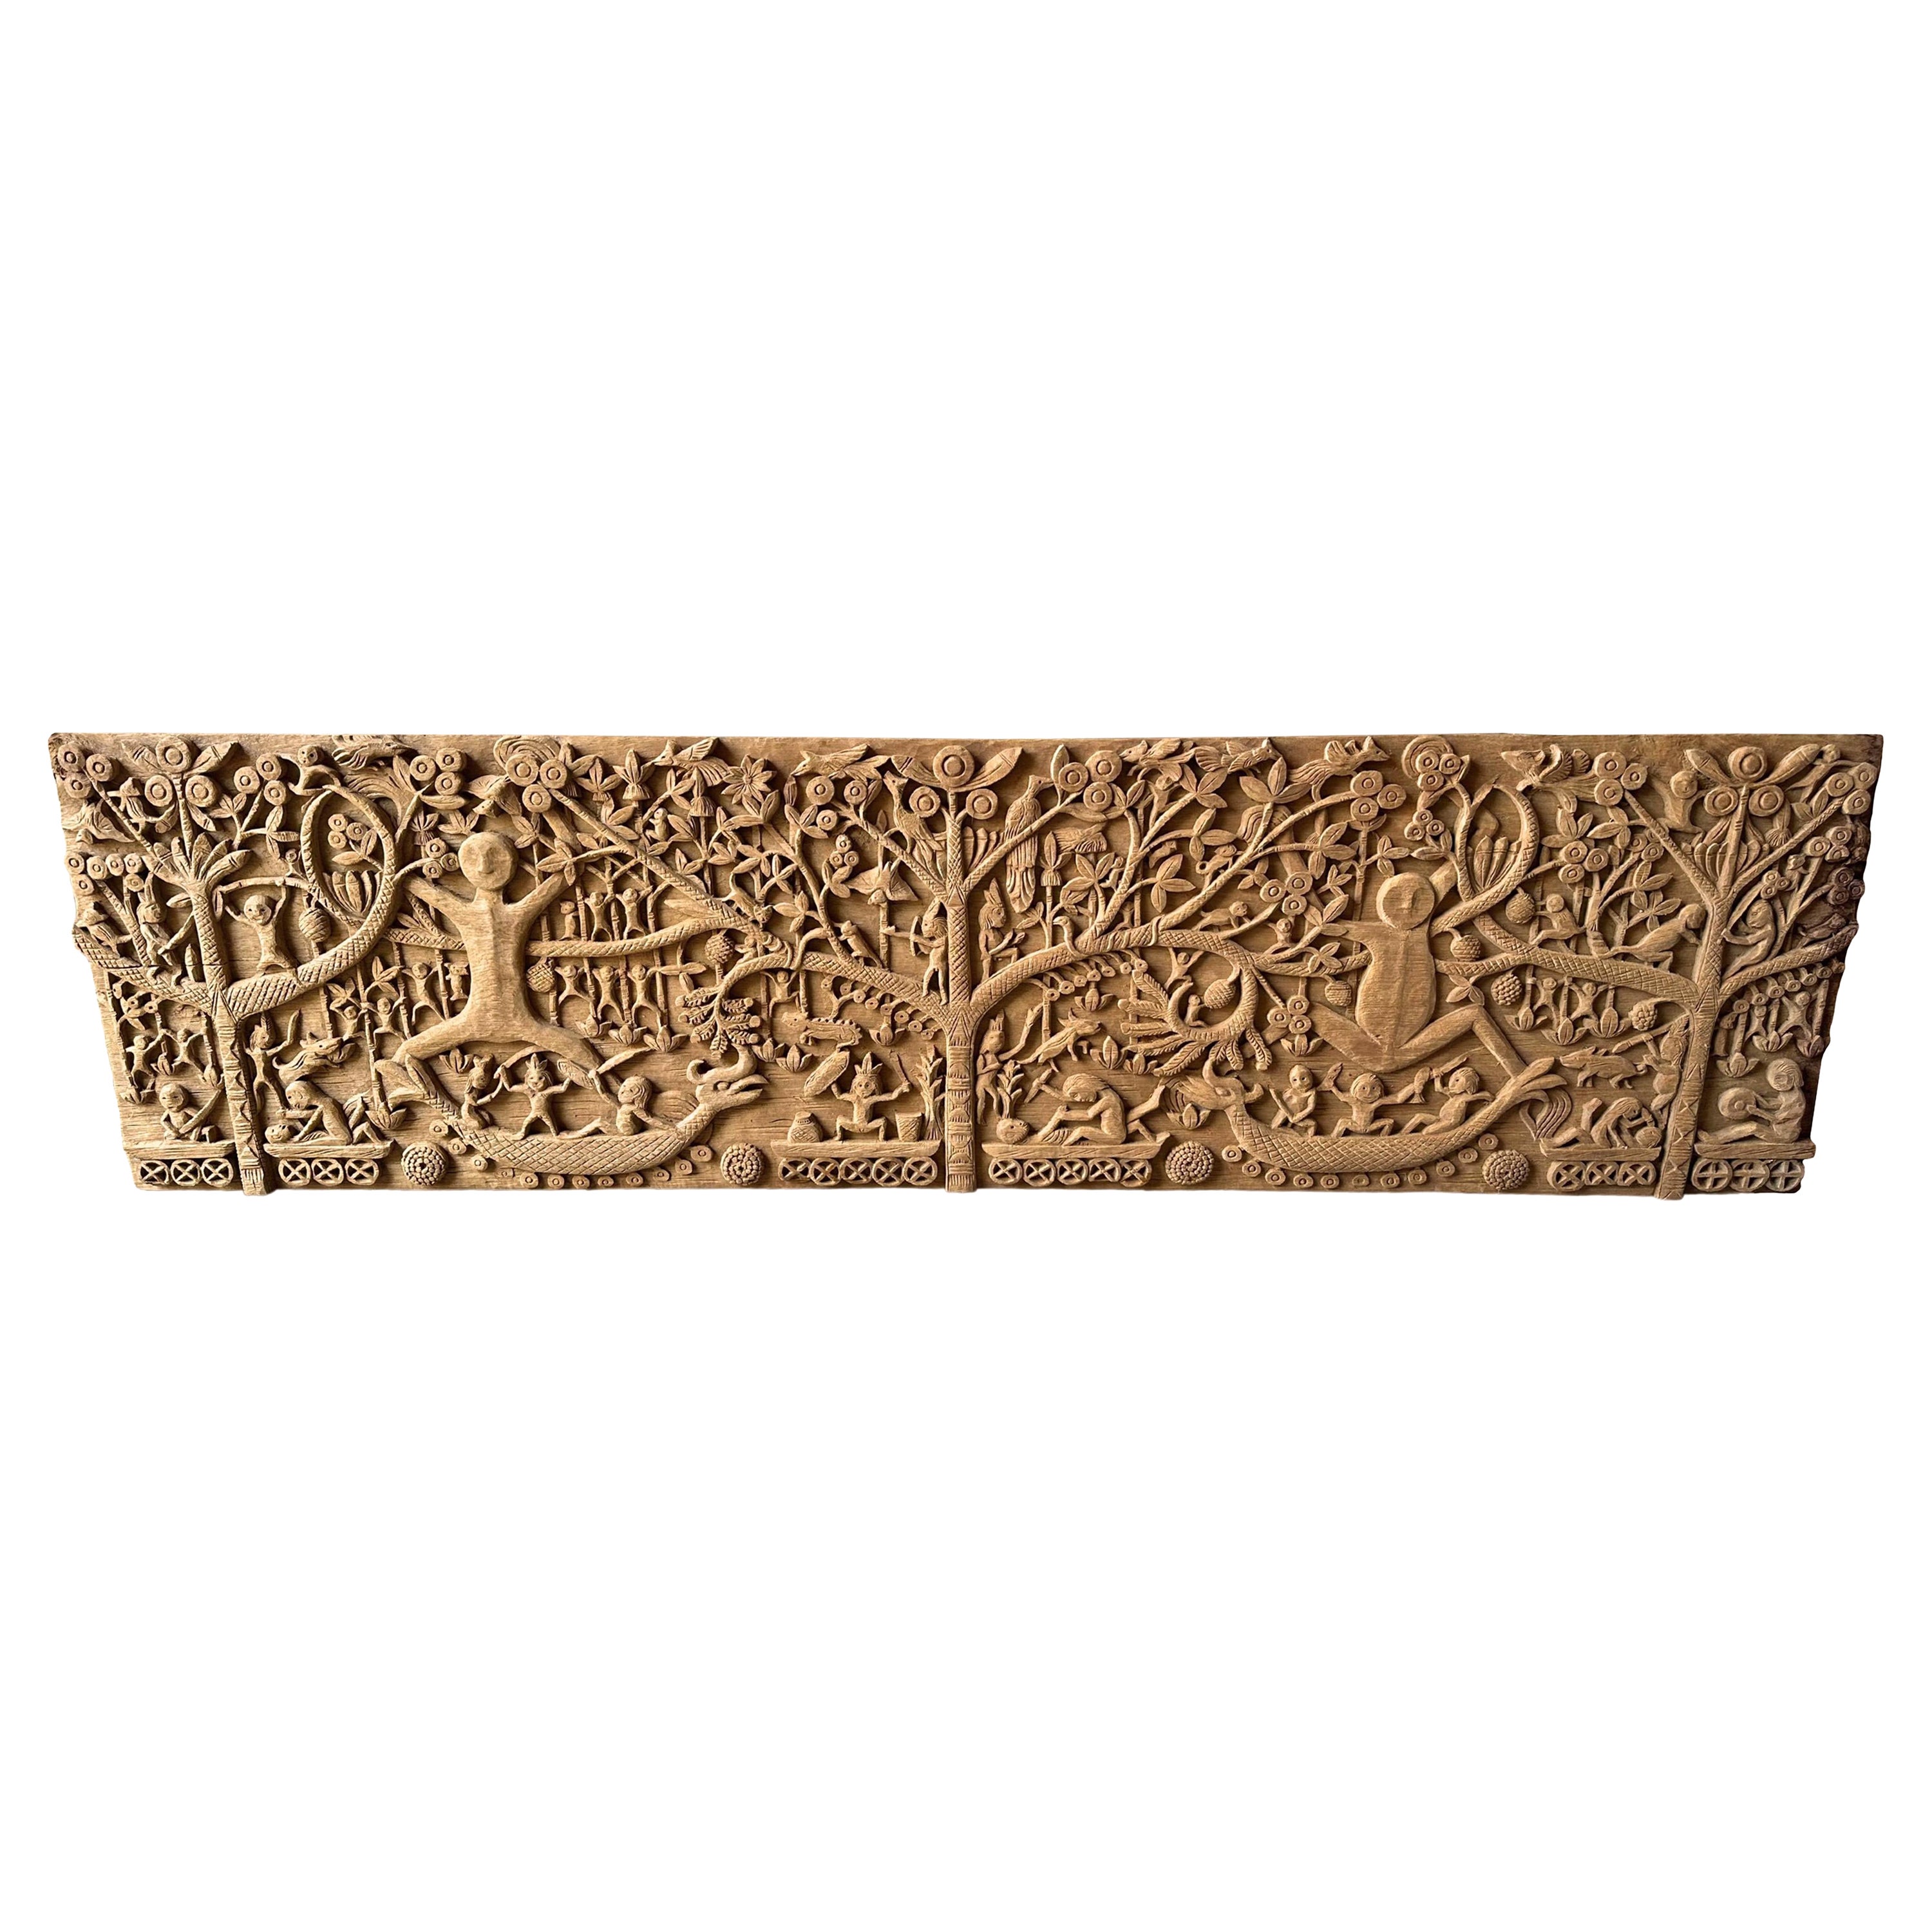 Hand-Carved Teak Wood Sculpture Panel Depicting Dayak Mythology For Sale